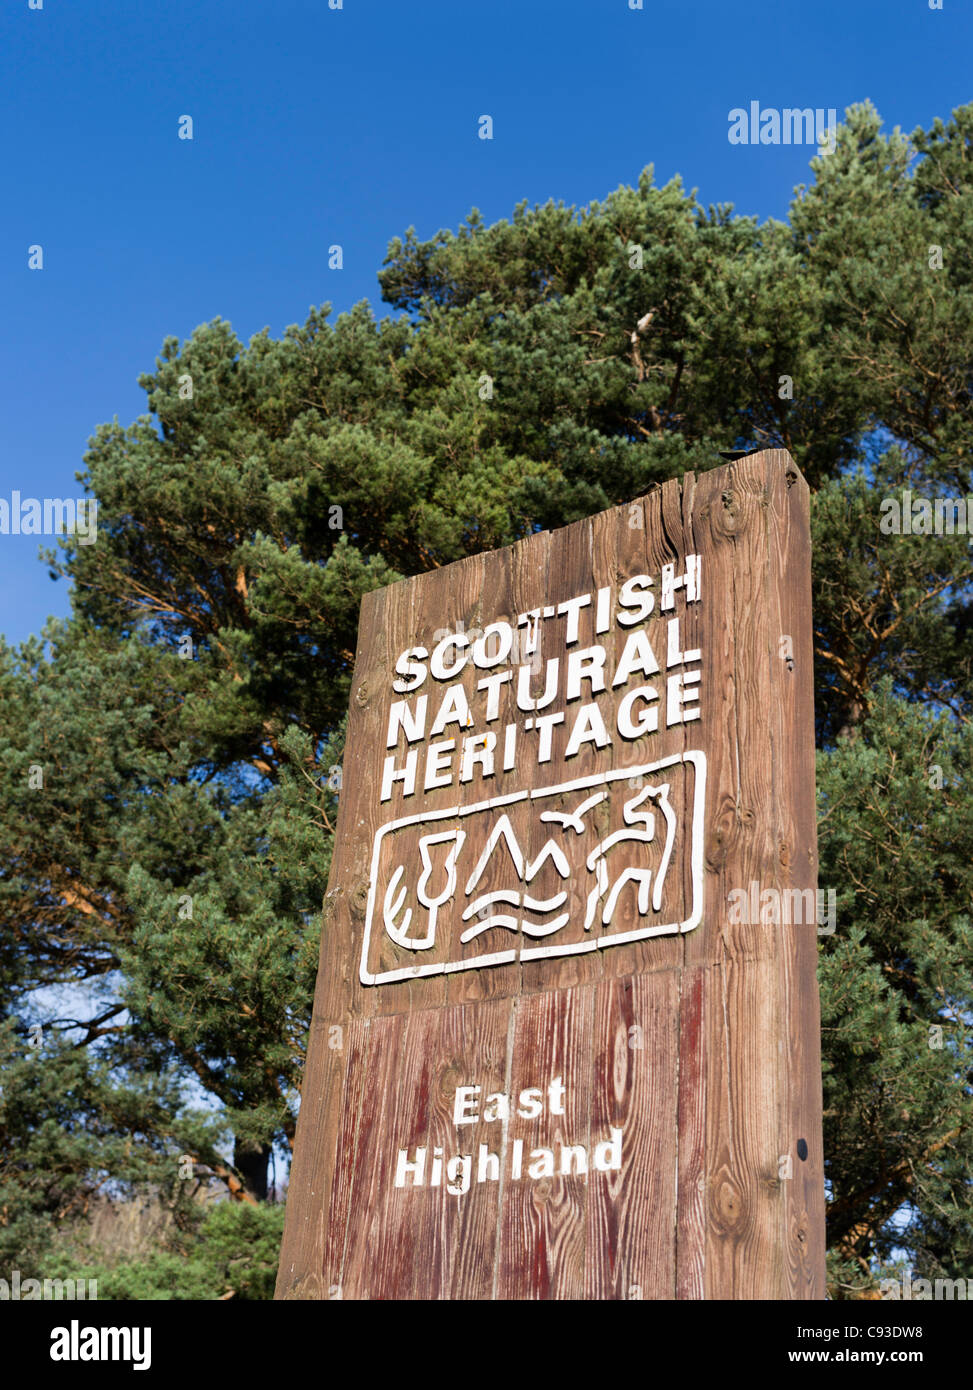 Dh Scottish Natural Heritage ENVIRONNEMENT PANNEAU panneau bois signe uk Banque D'Images